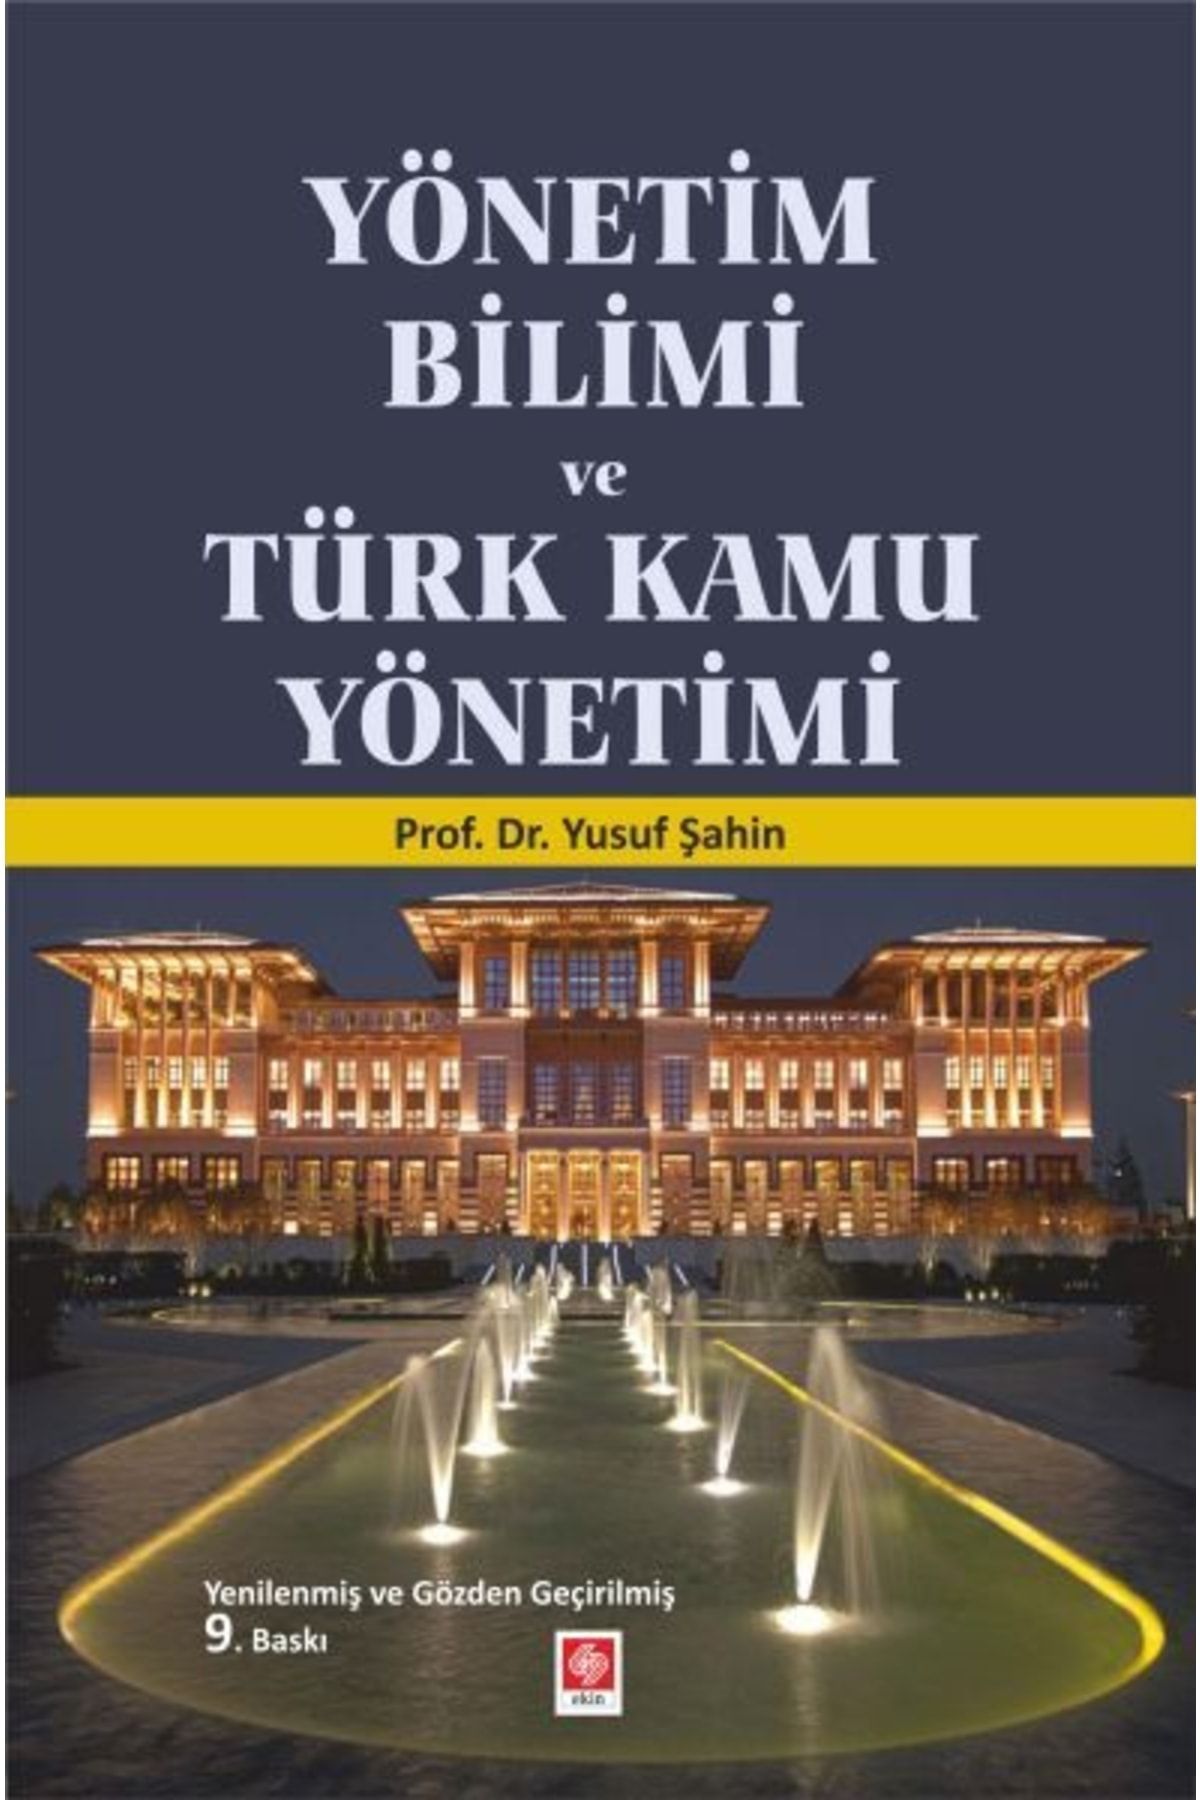 Genel Markalar Yönetim Bilimi Ve Türk Kamu Yönetimi